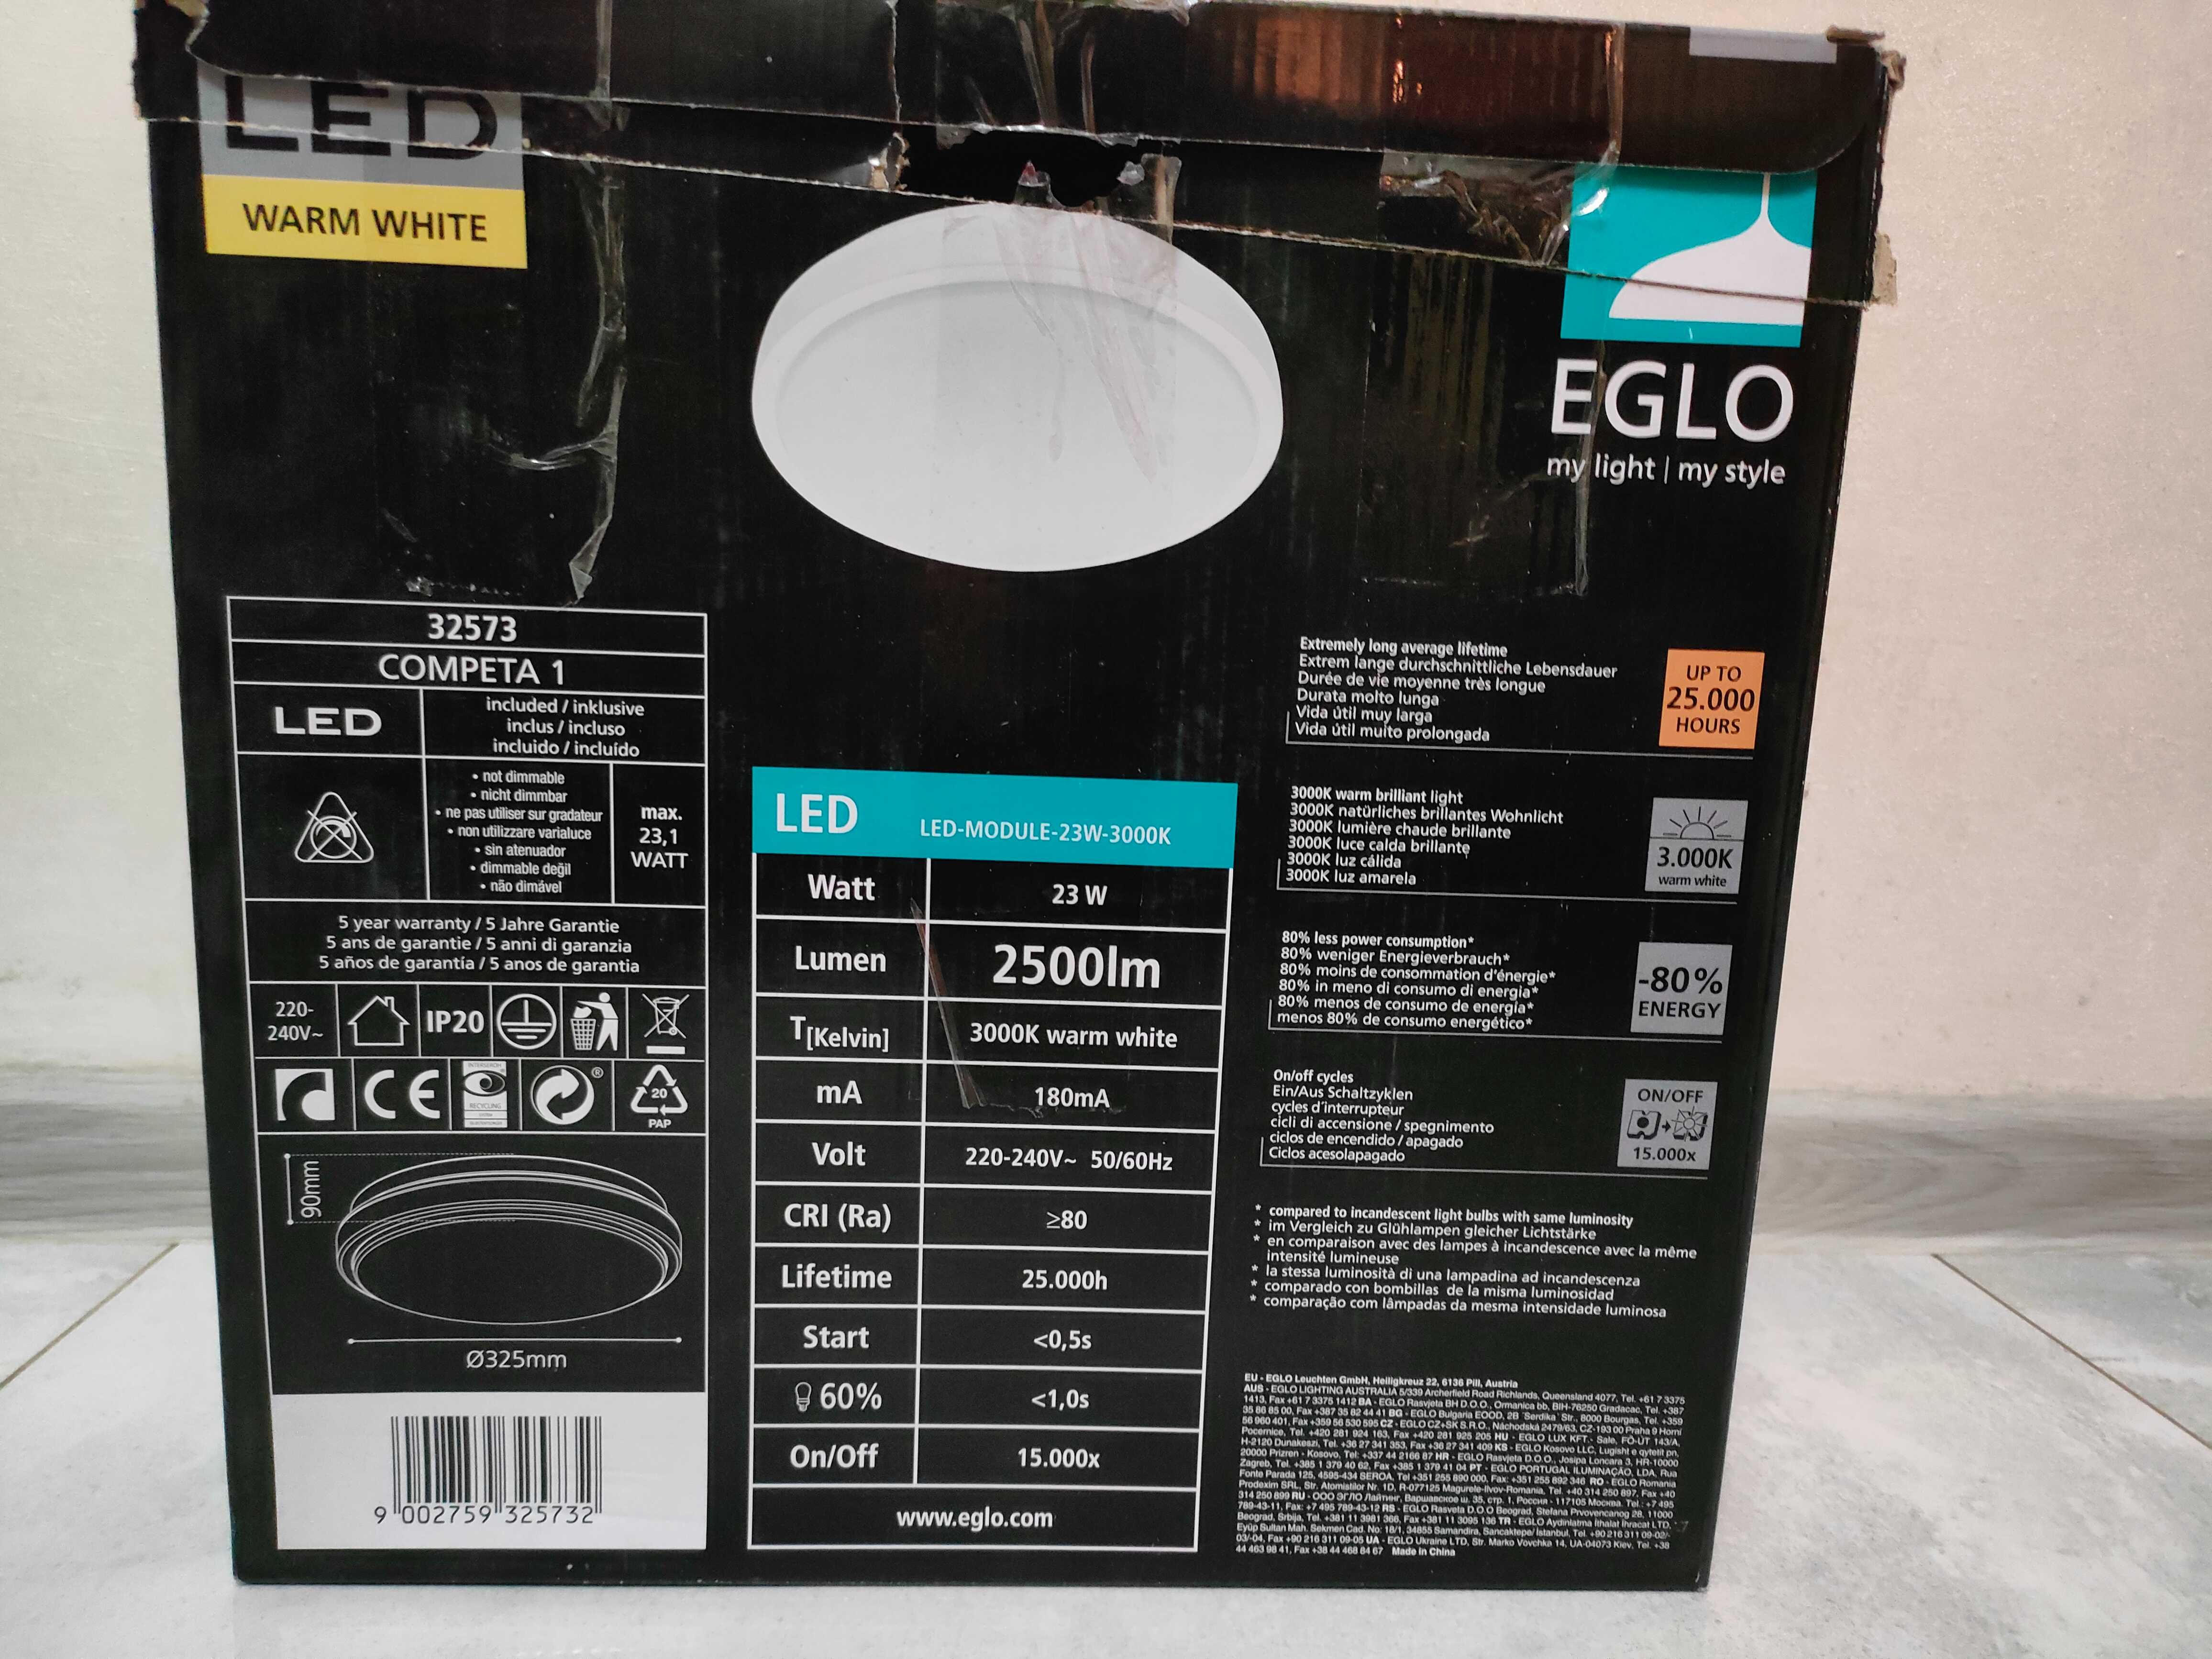 Plafon LED Eglo Competa 1 32573